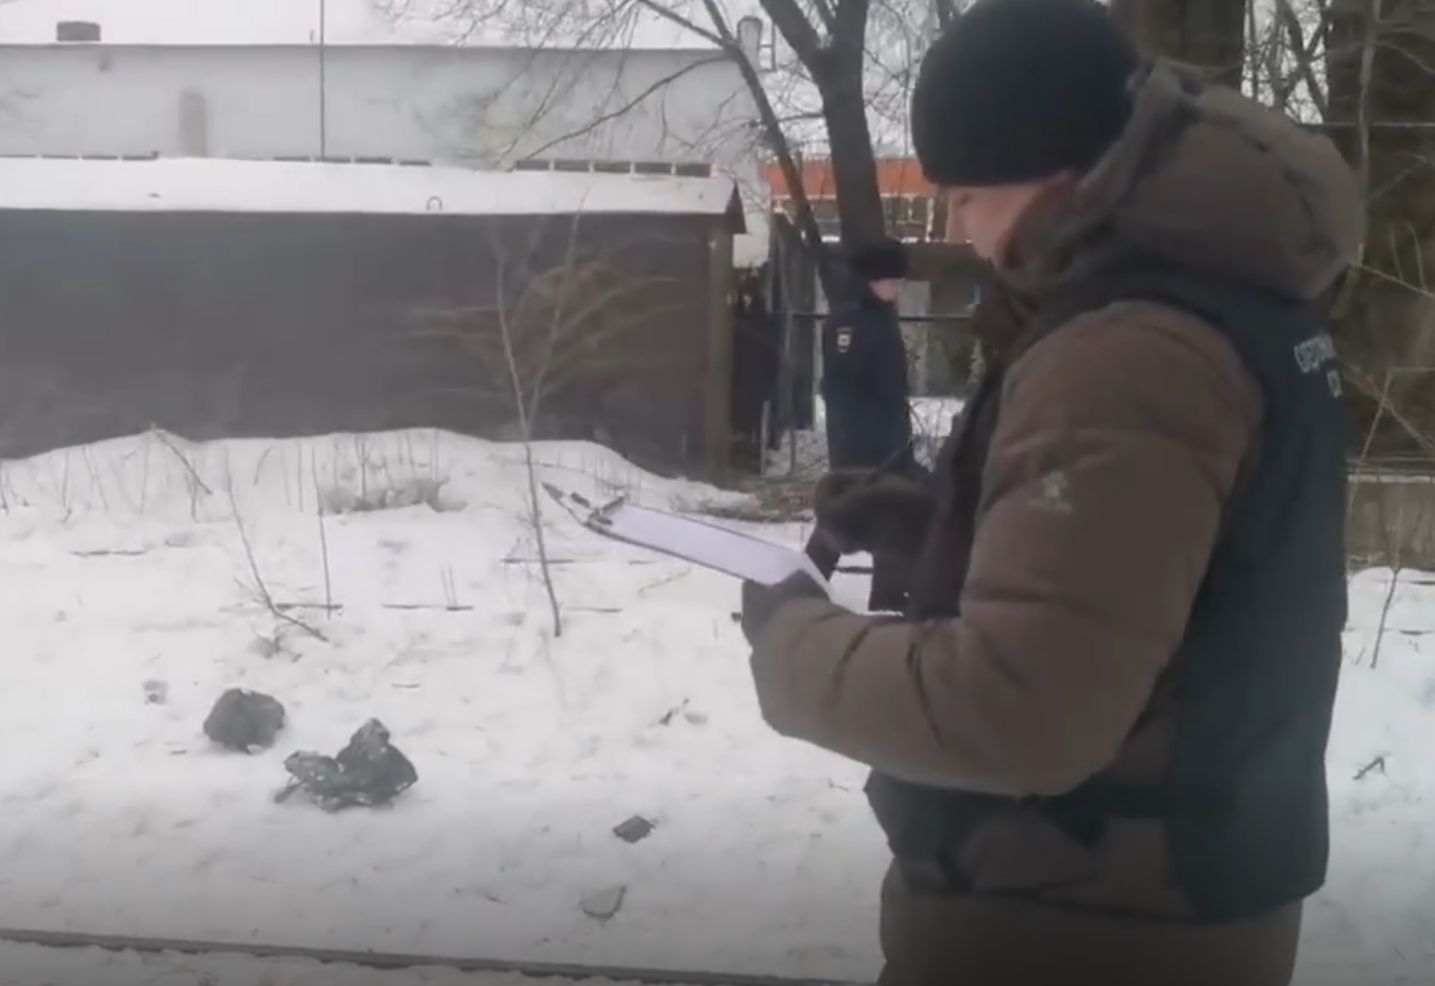 ЧП случилось ранним утром 16 января по улице Айвазовского. Кадр из видео, снятого на месте происшествия.